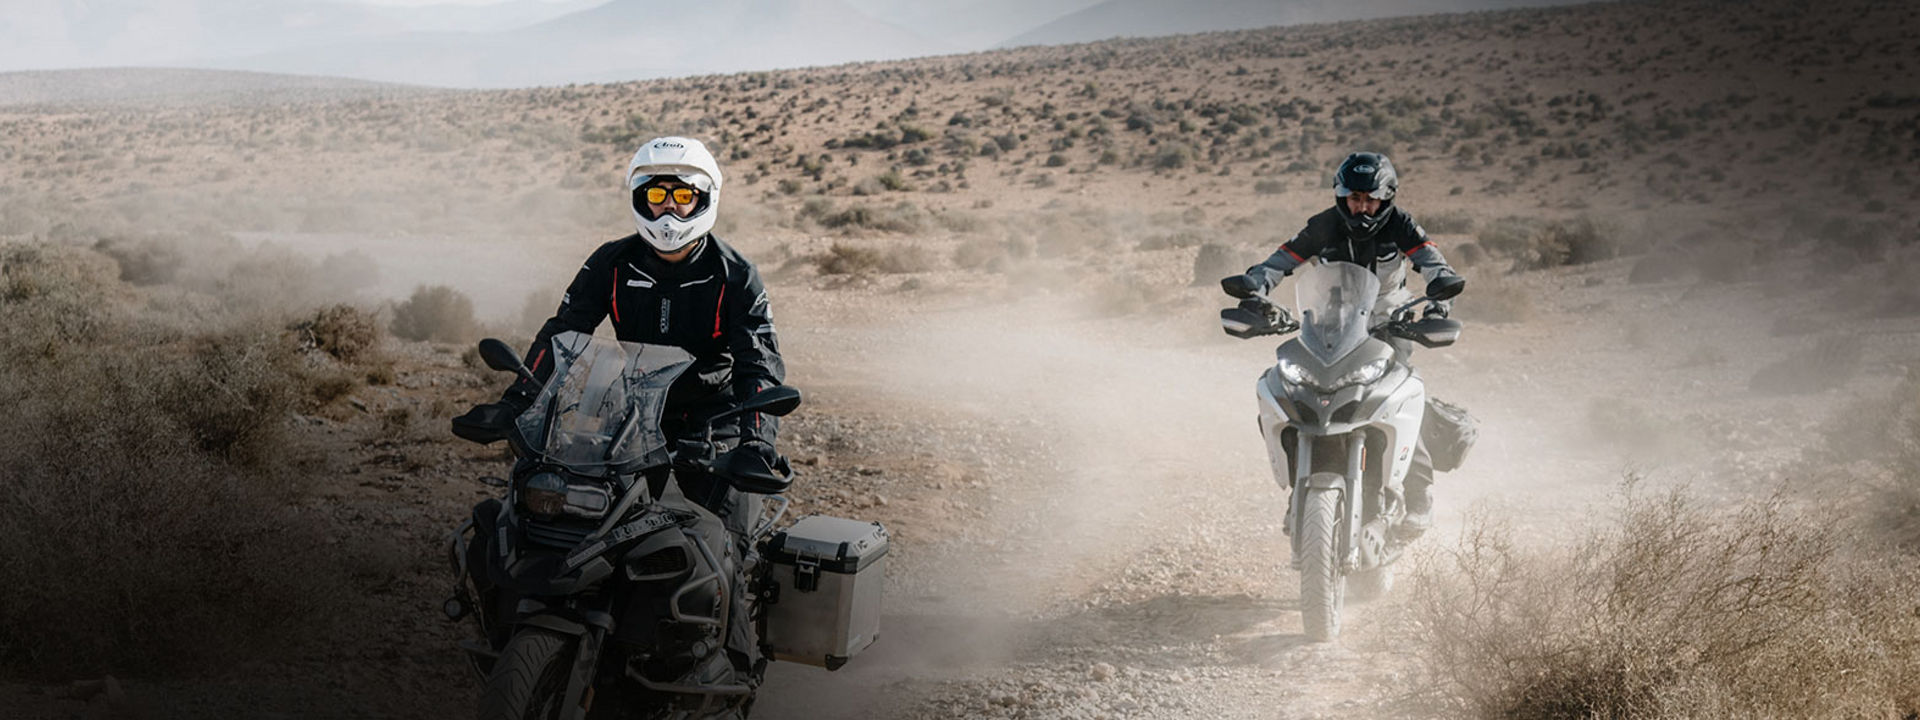 Dette bildet viser to motorsyklister som kjører på Bridgestone adventure dekk for å utforske ørkenen på motorsykkel.